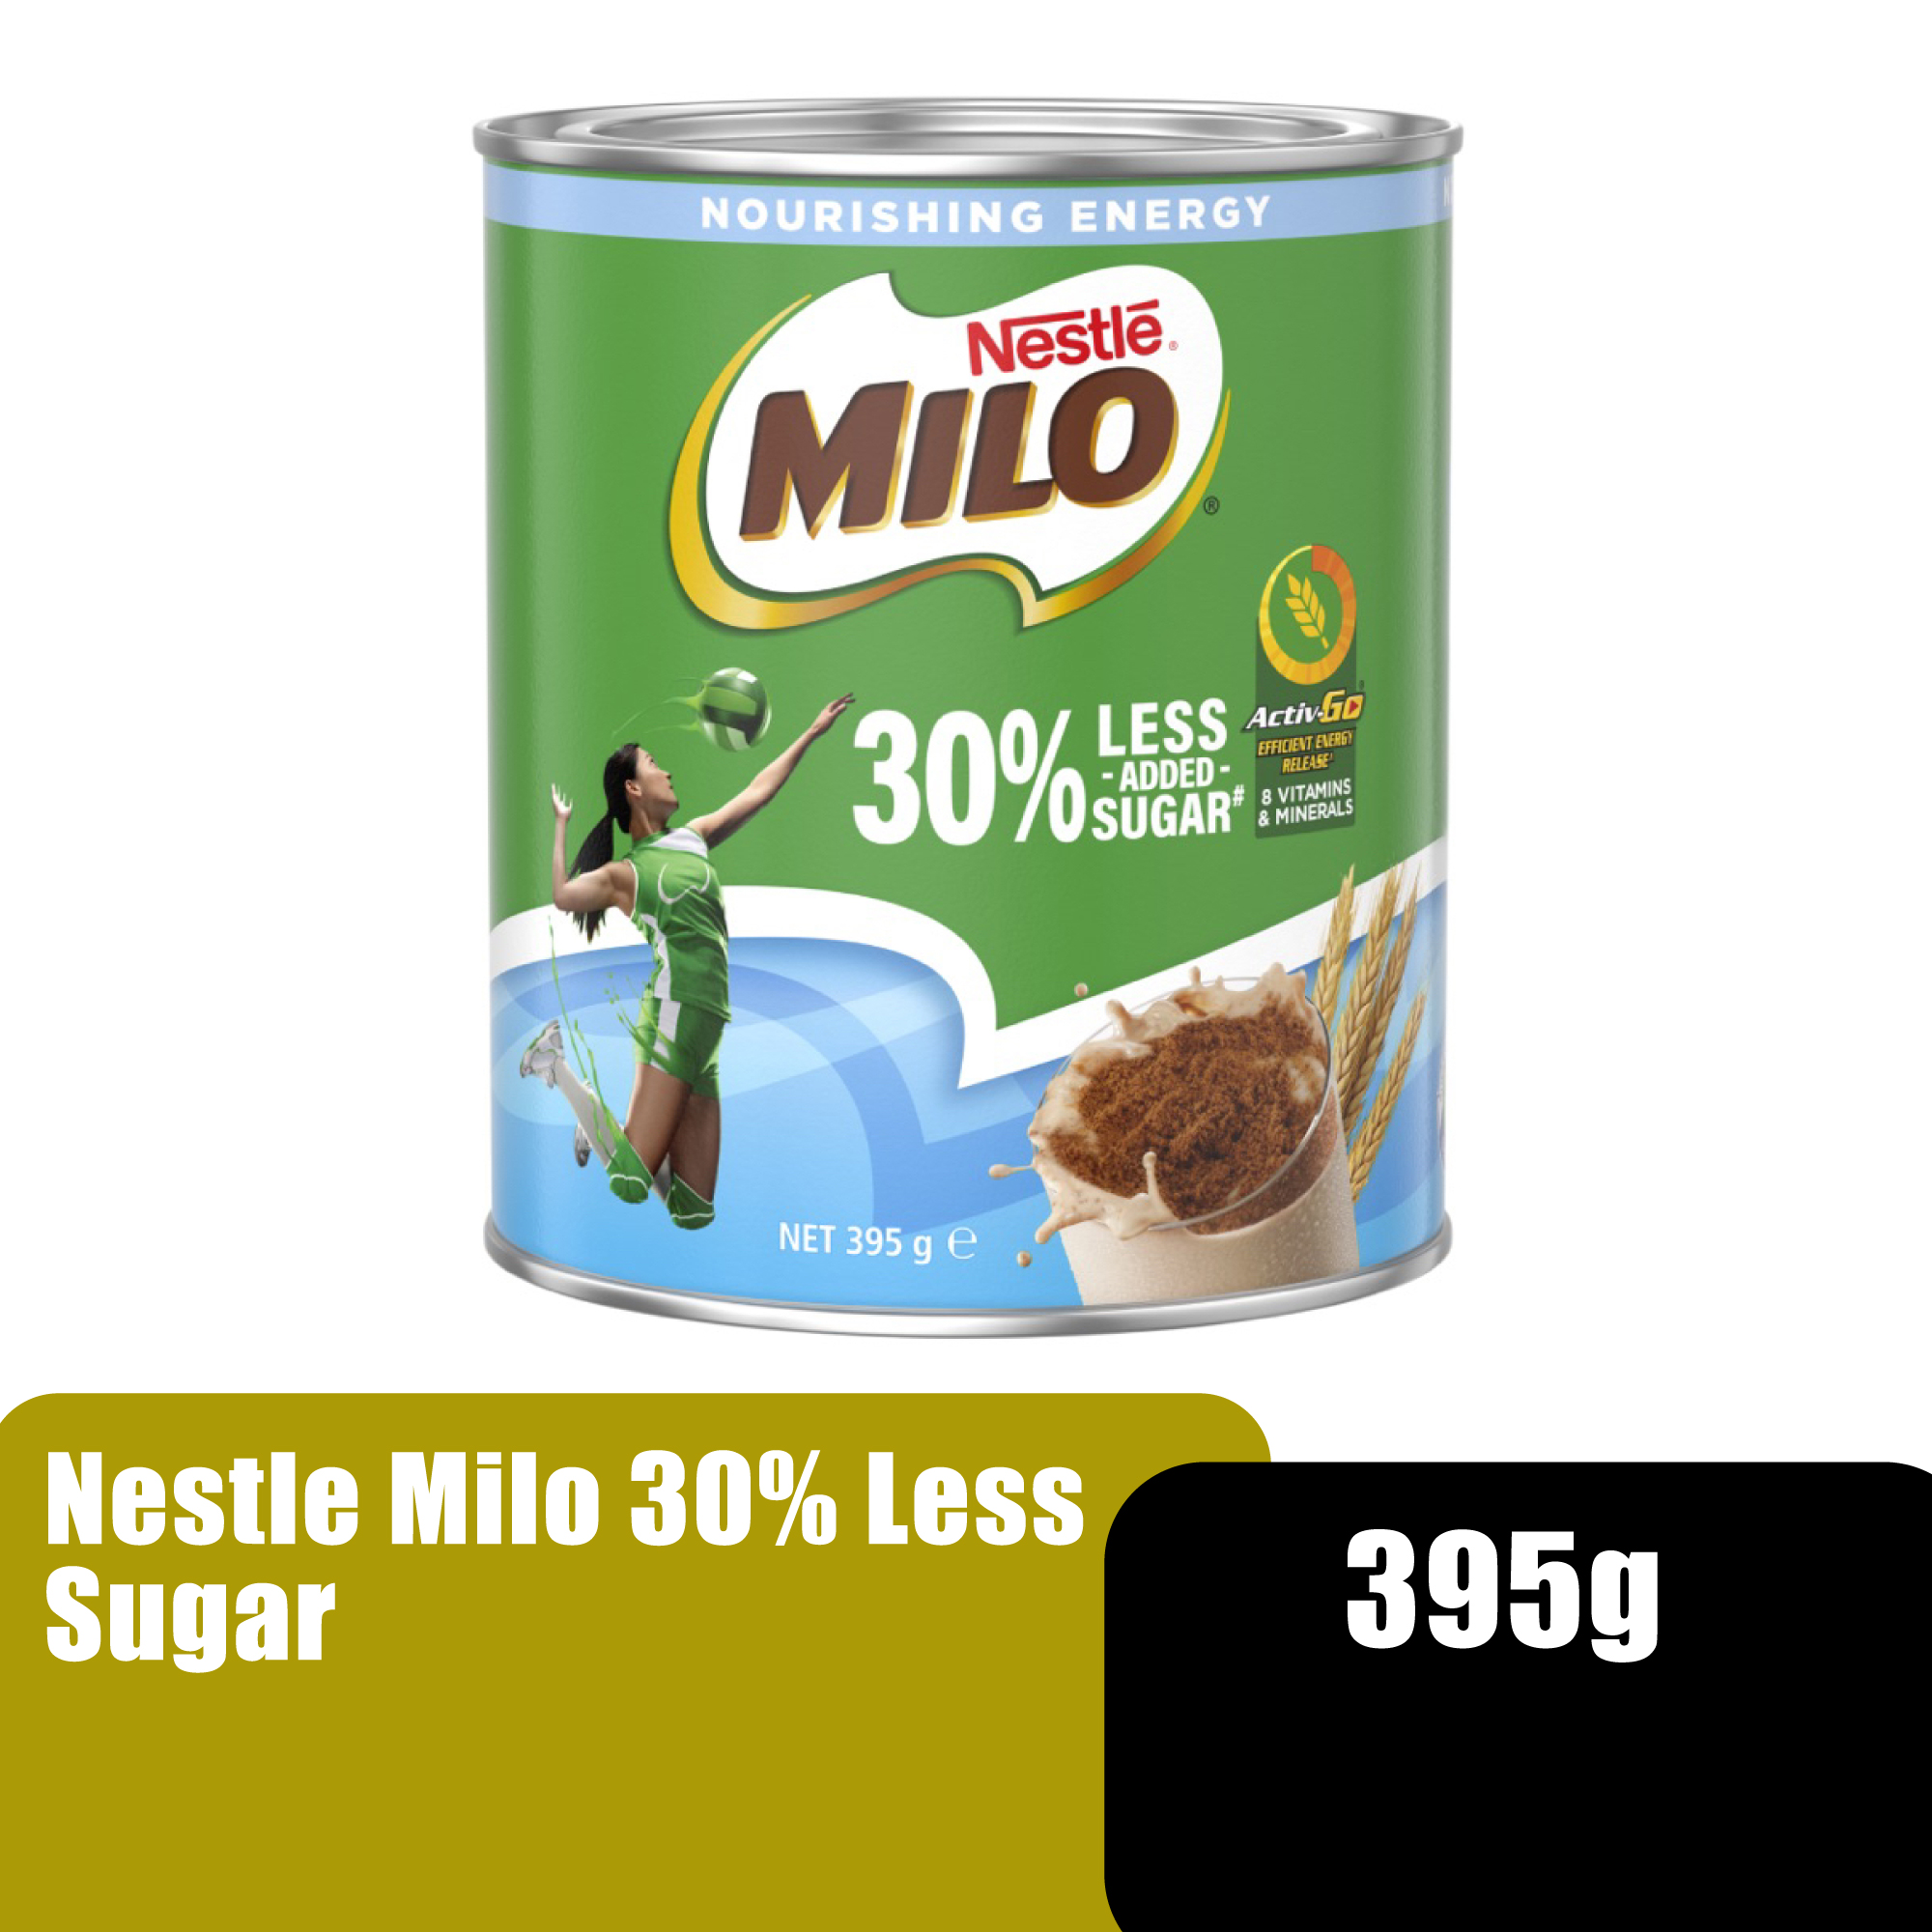 NESTLE Milo 30% Reduced Sugar Chocolate Drink, Low Sugar Healthy Chocolate Drink 美禄 巧克力饮料 395g